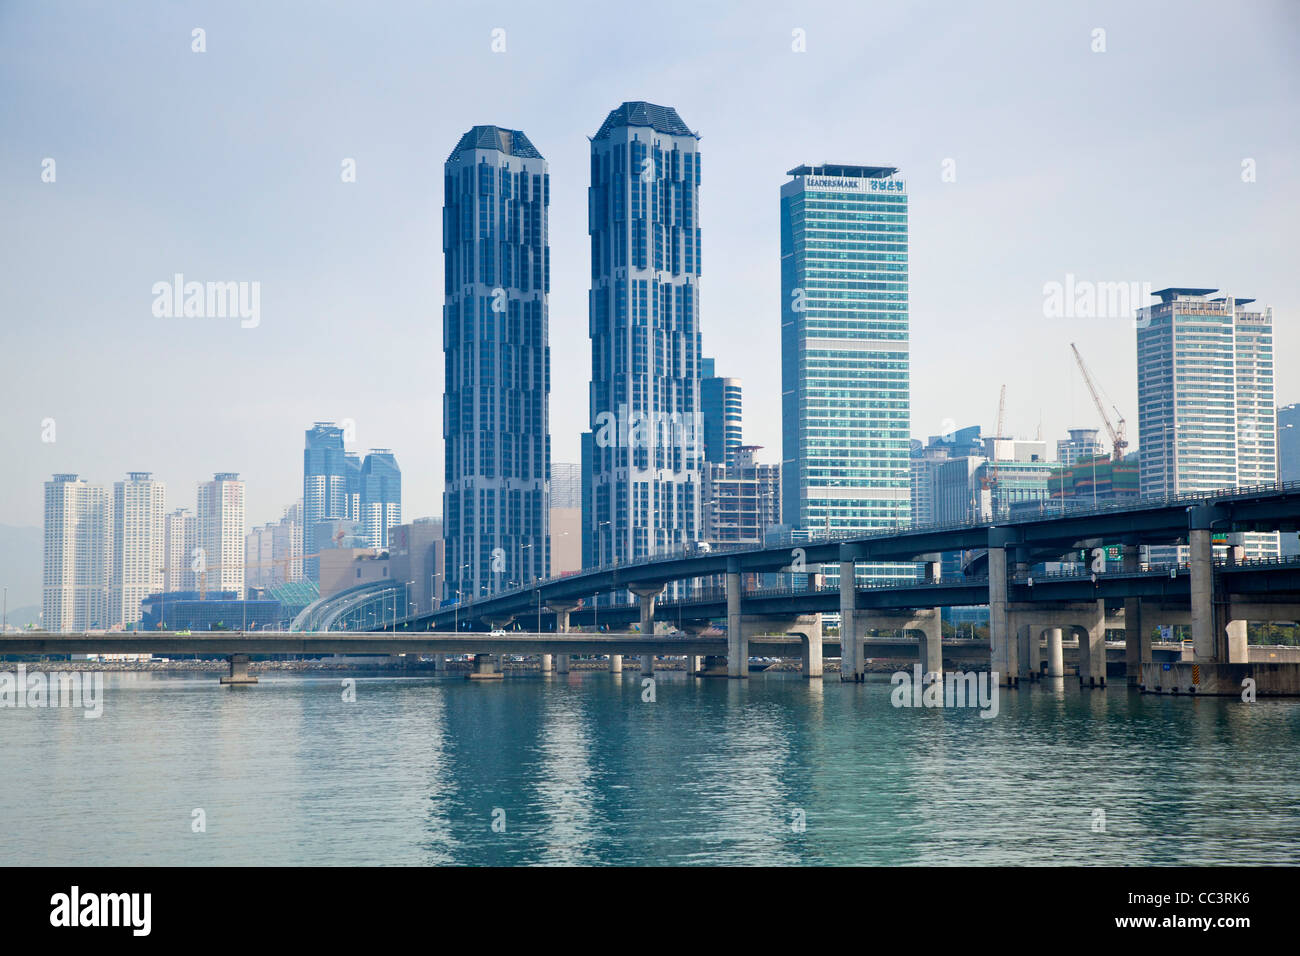 Korea, Gyeongsangnam-do, Busan, Haeundae luxury appartment buildings reflecting in Suyeonggang River Stock Photo